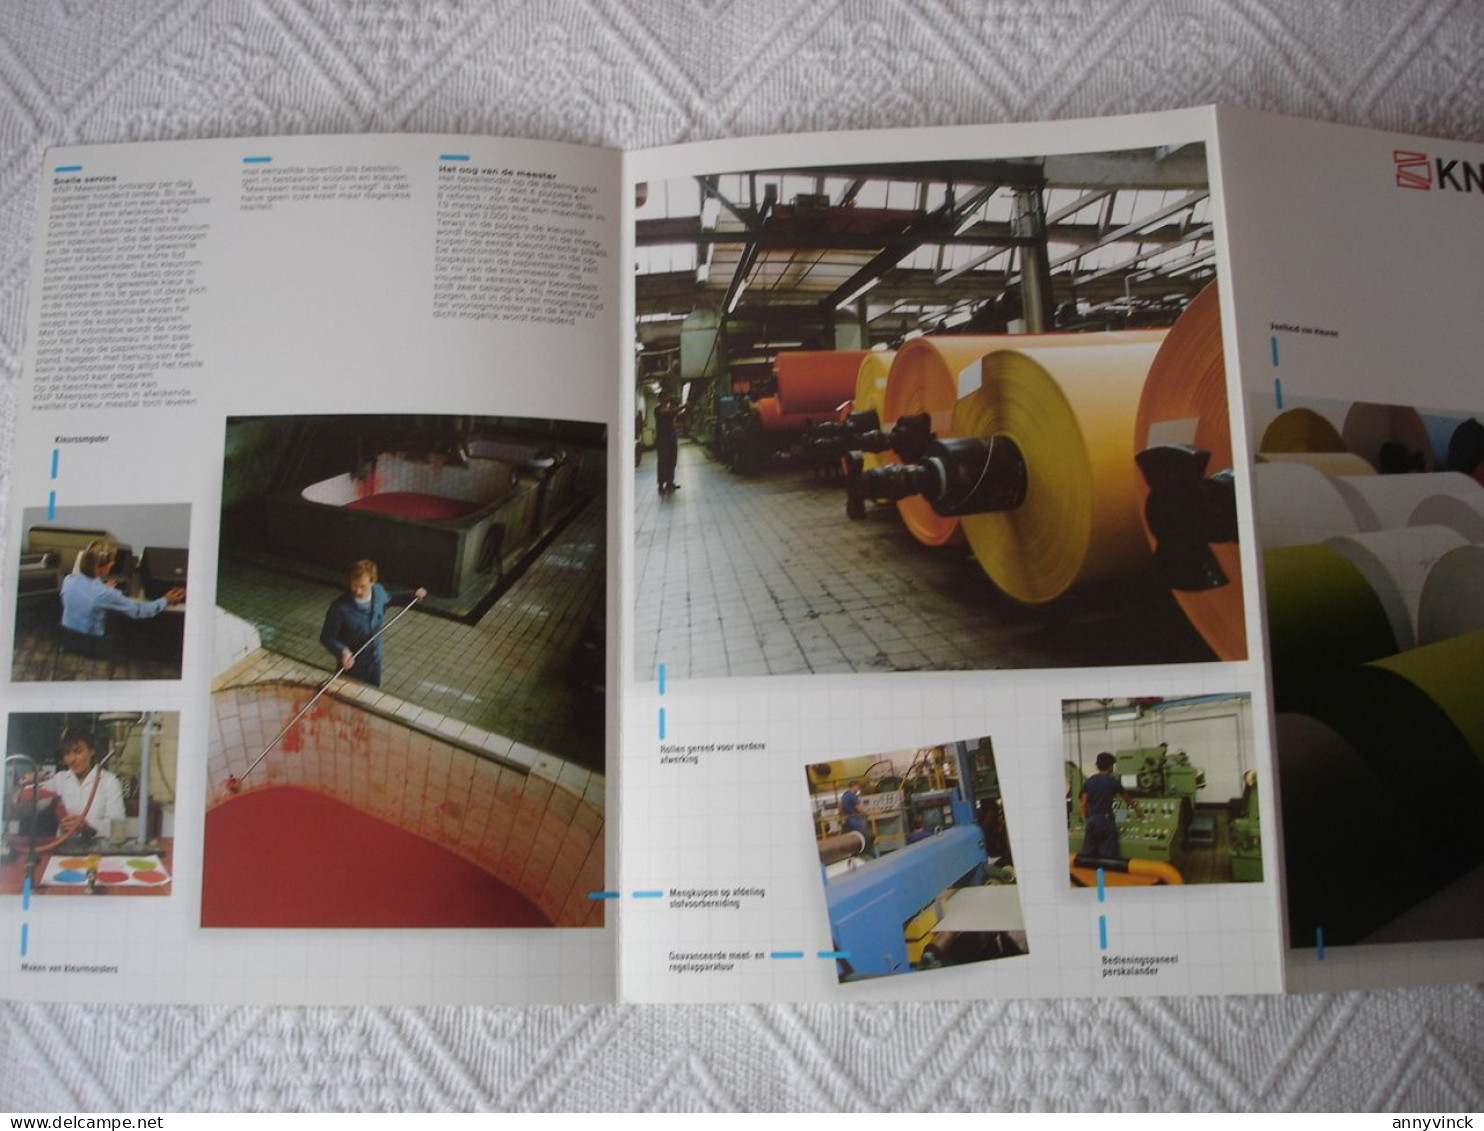 Apeldoorn (NL) Gelderse Papiergroep, bedrijfsbrochures, catalogi, monsters veelal met watermerken